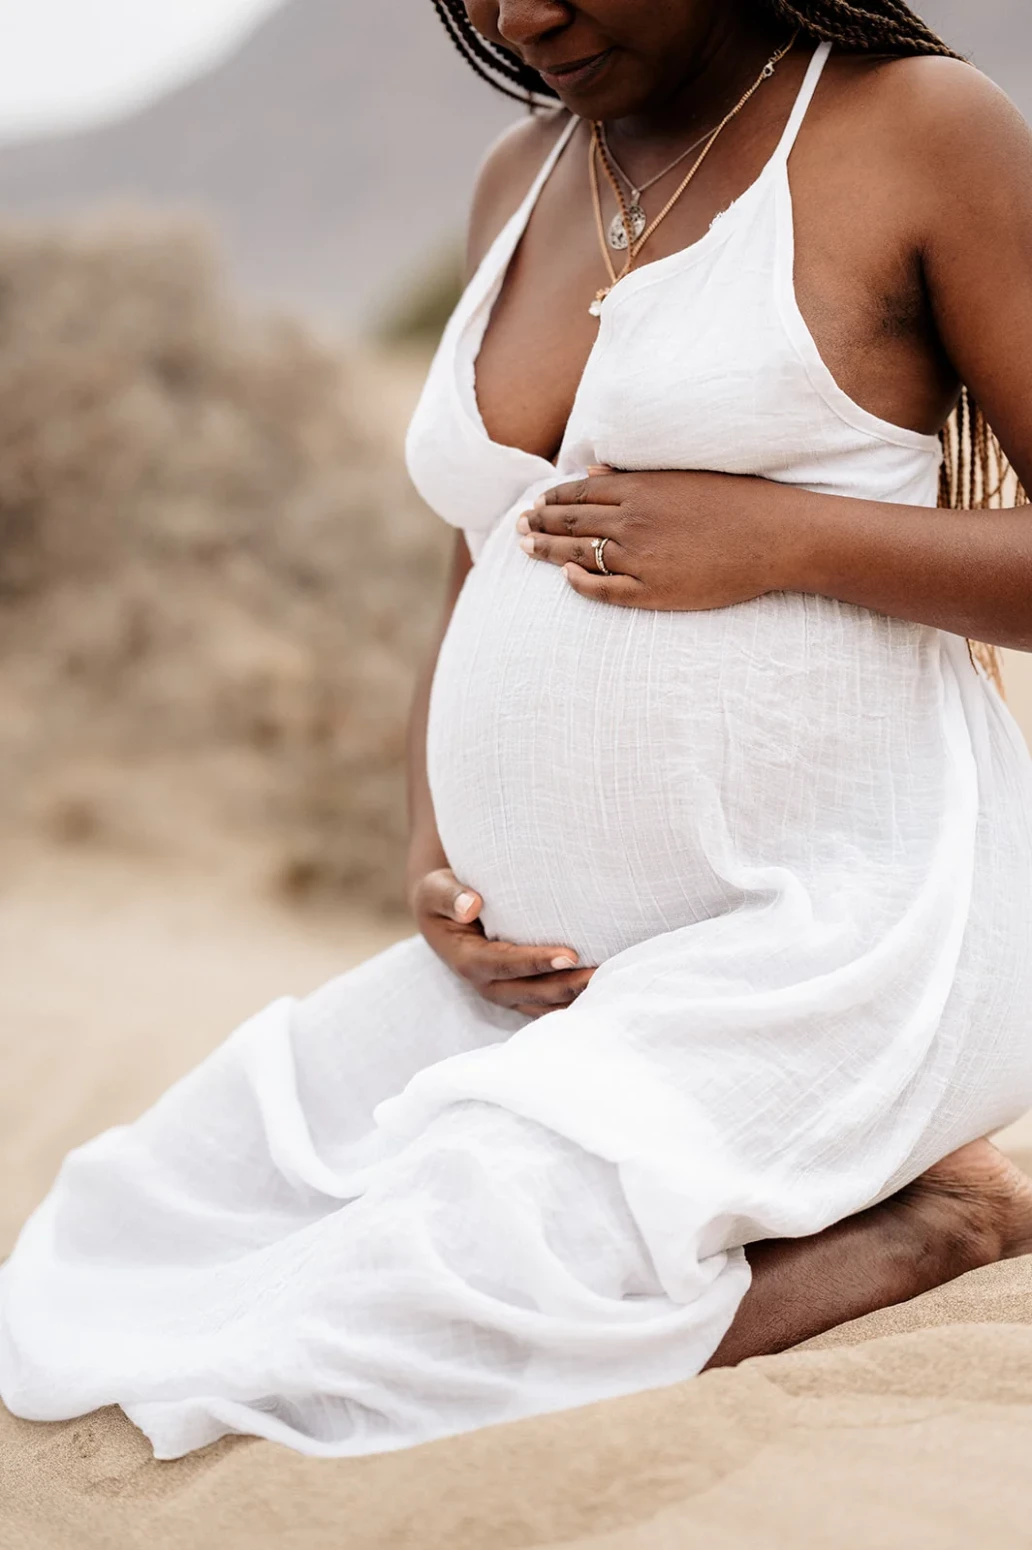 Pregnancy portrait photographer Lanzarote Lucilla Bellini